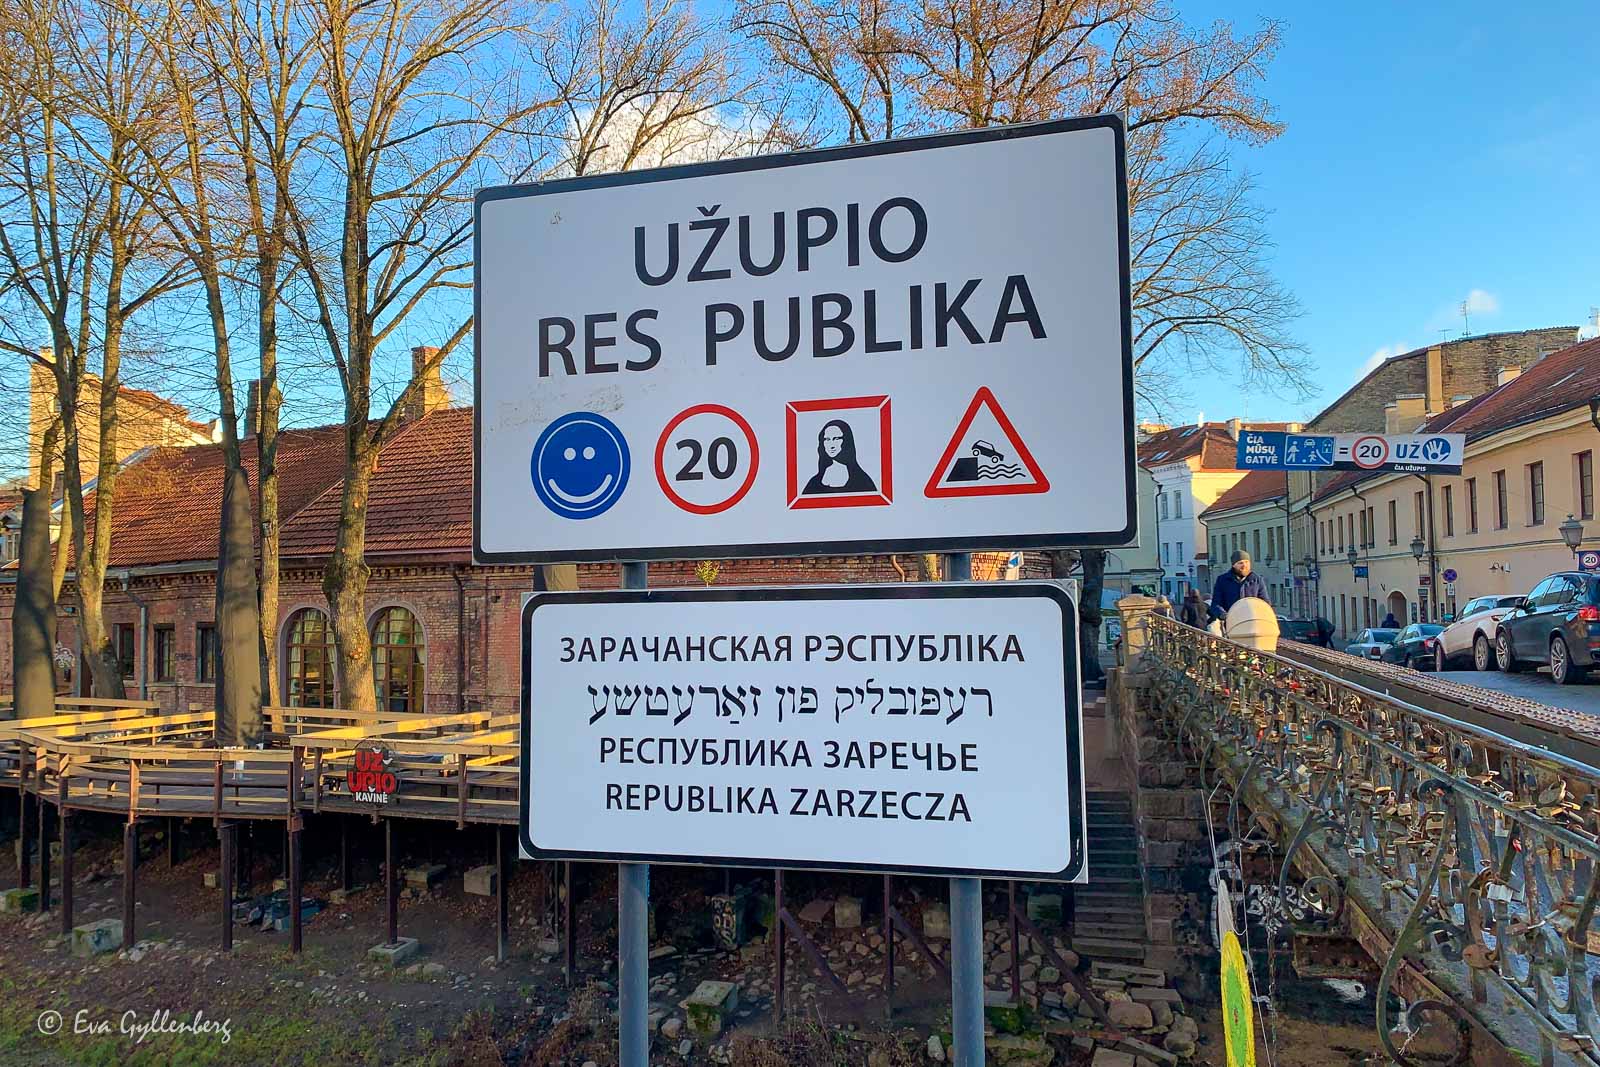 Uzupio - Vilnius